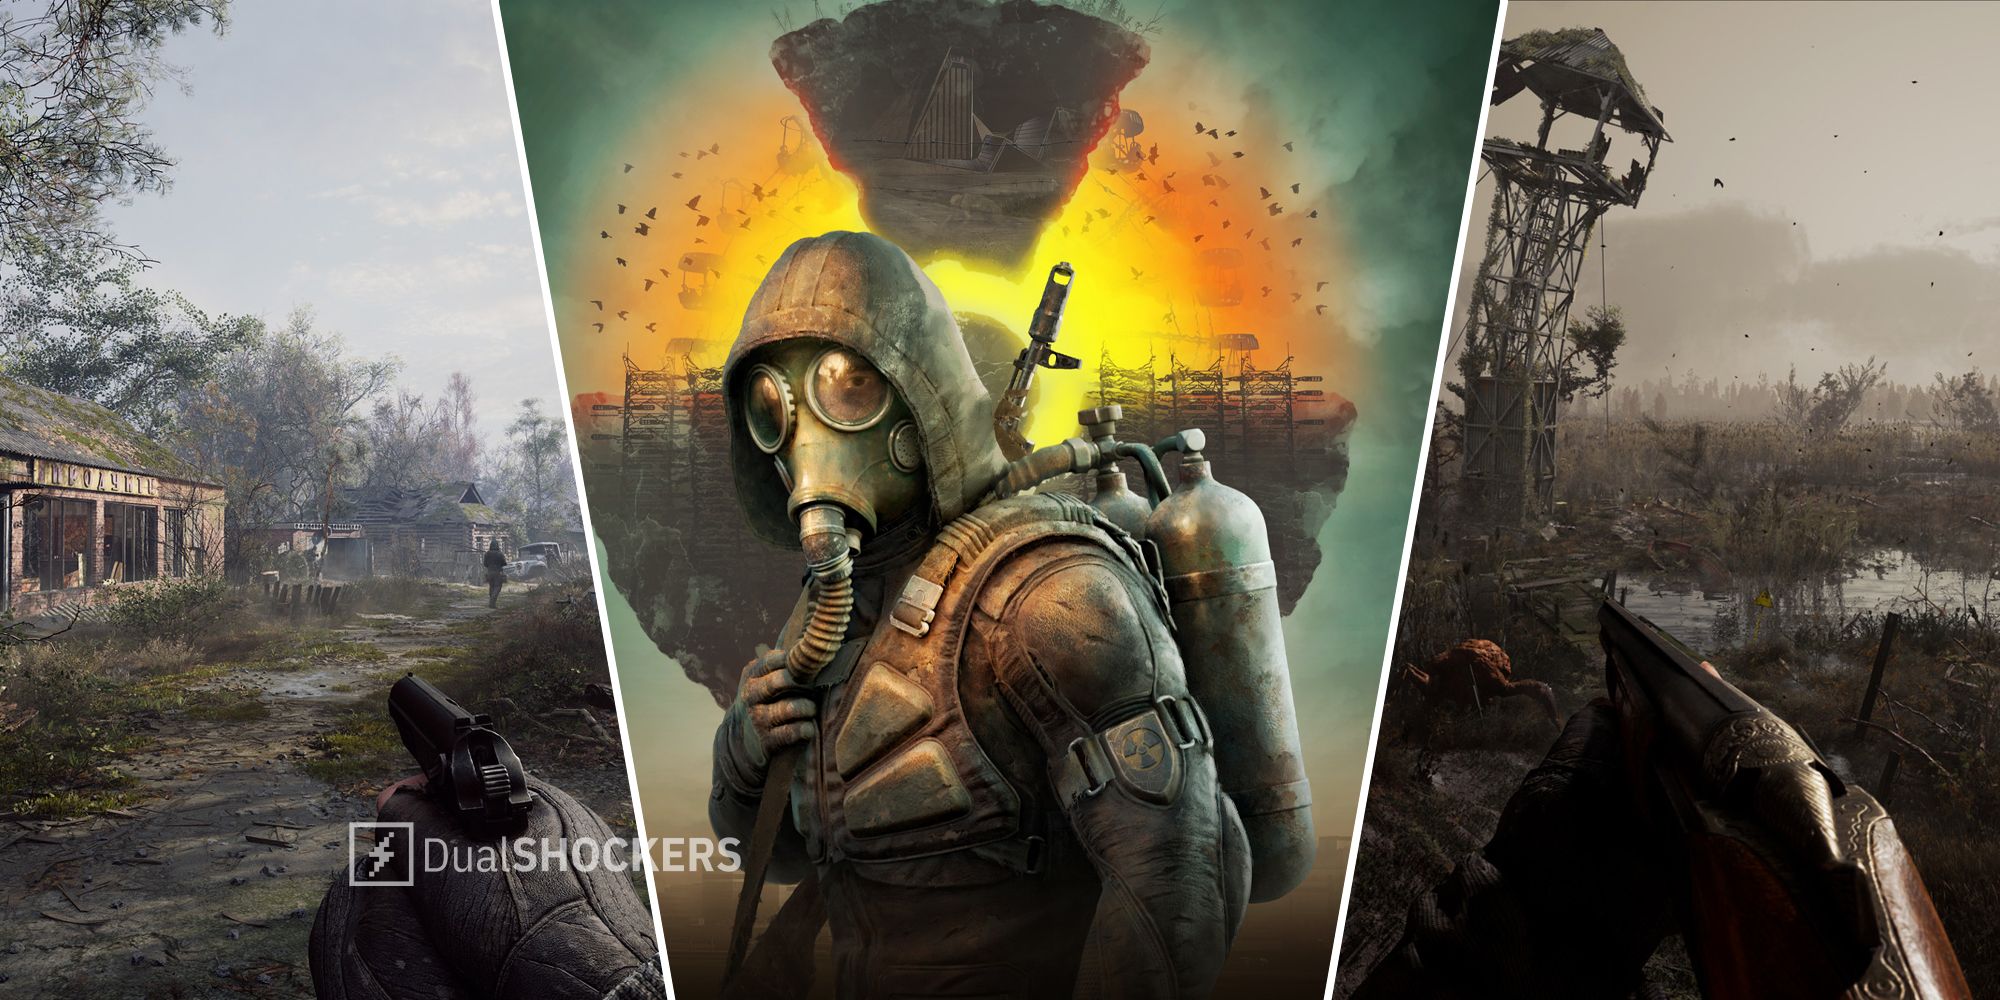 S.T.A.L.K.E.R. 2: Heart of Chernobyl - PS5™ Gameplay [4K HDR